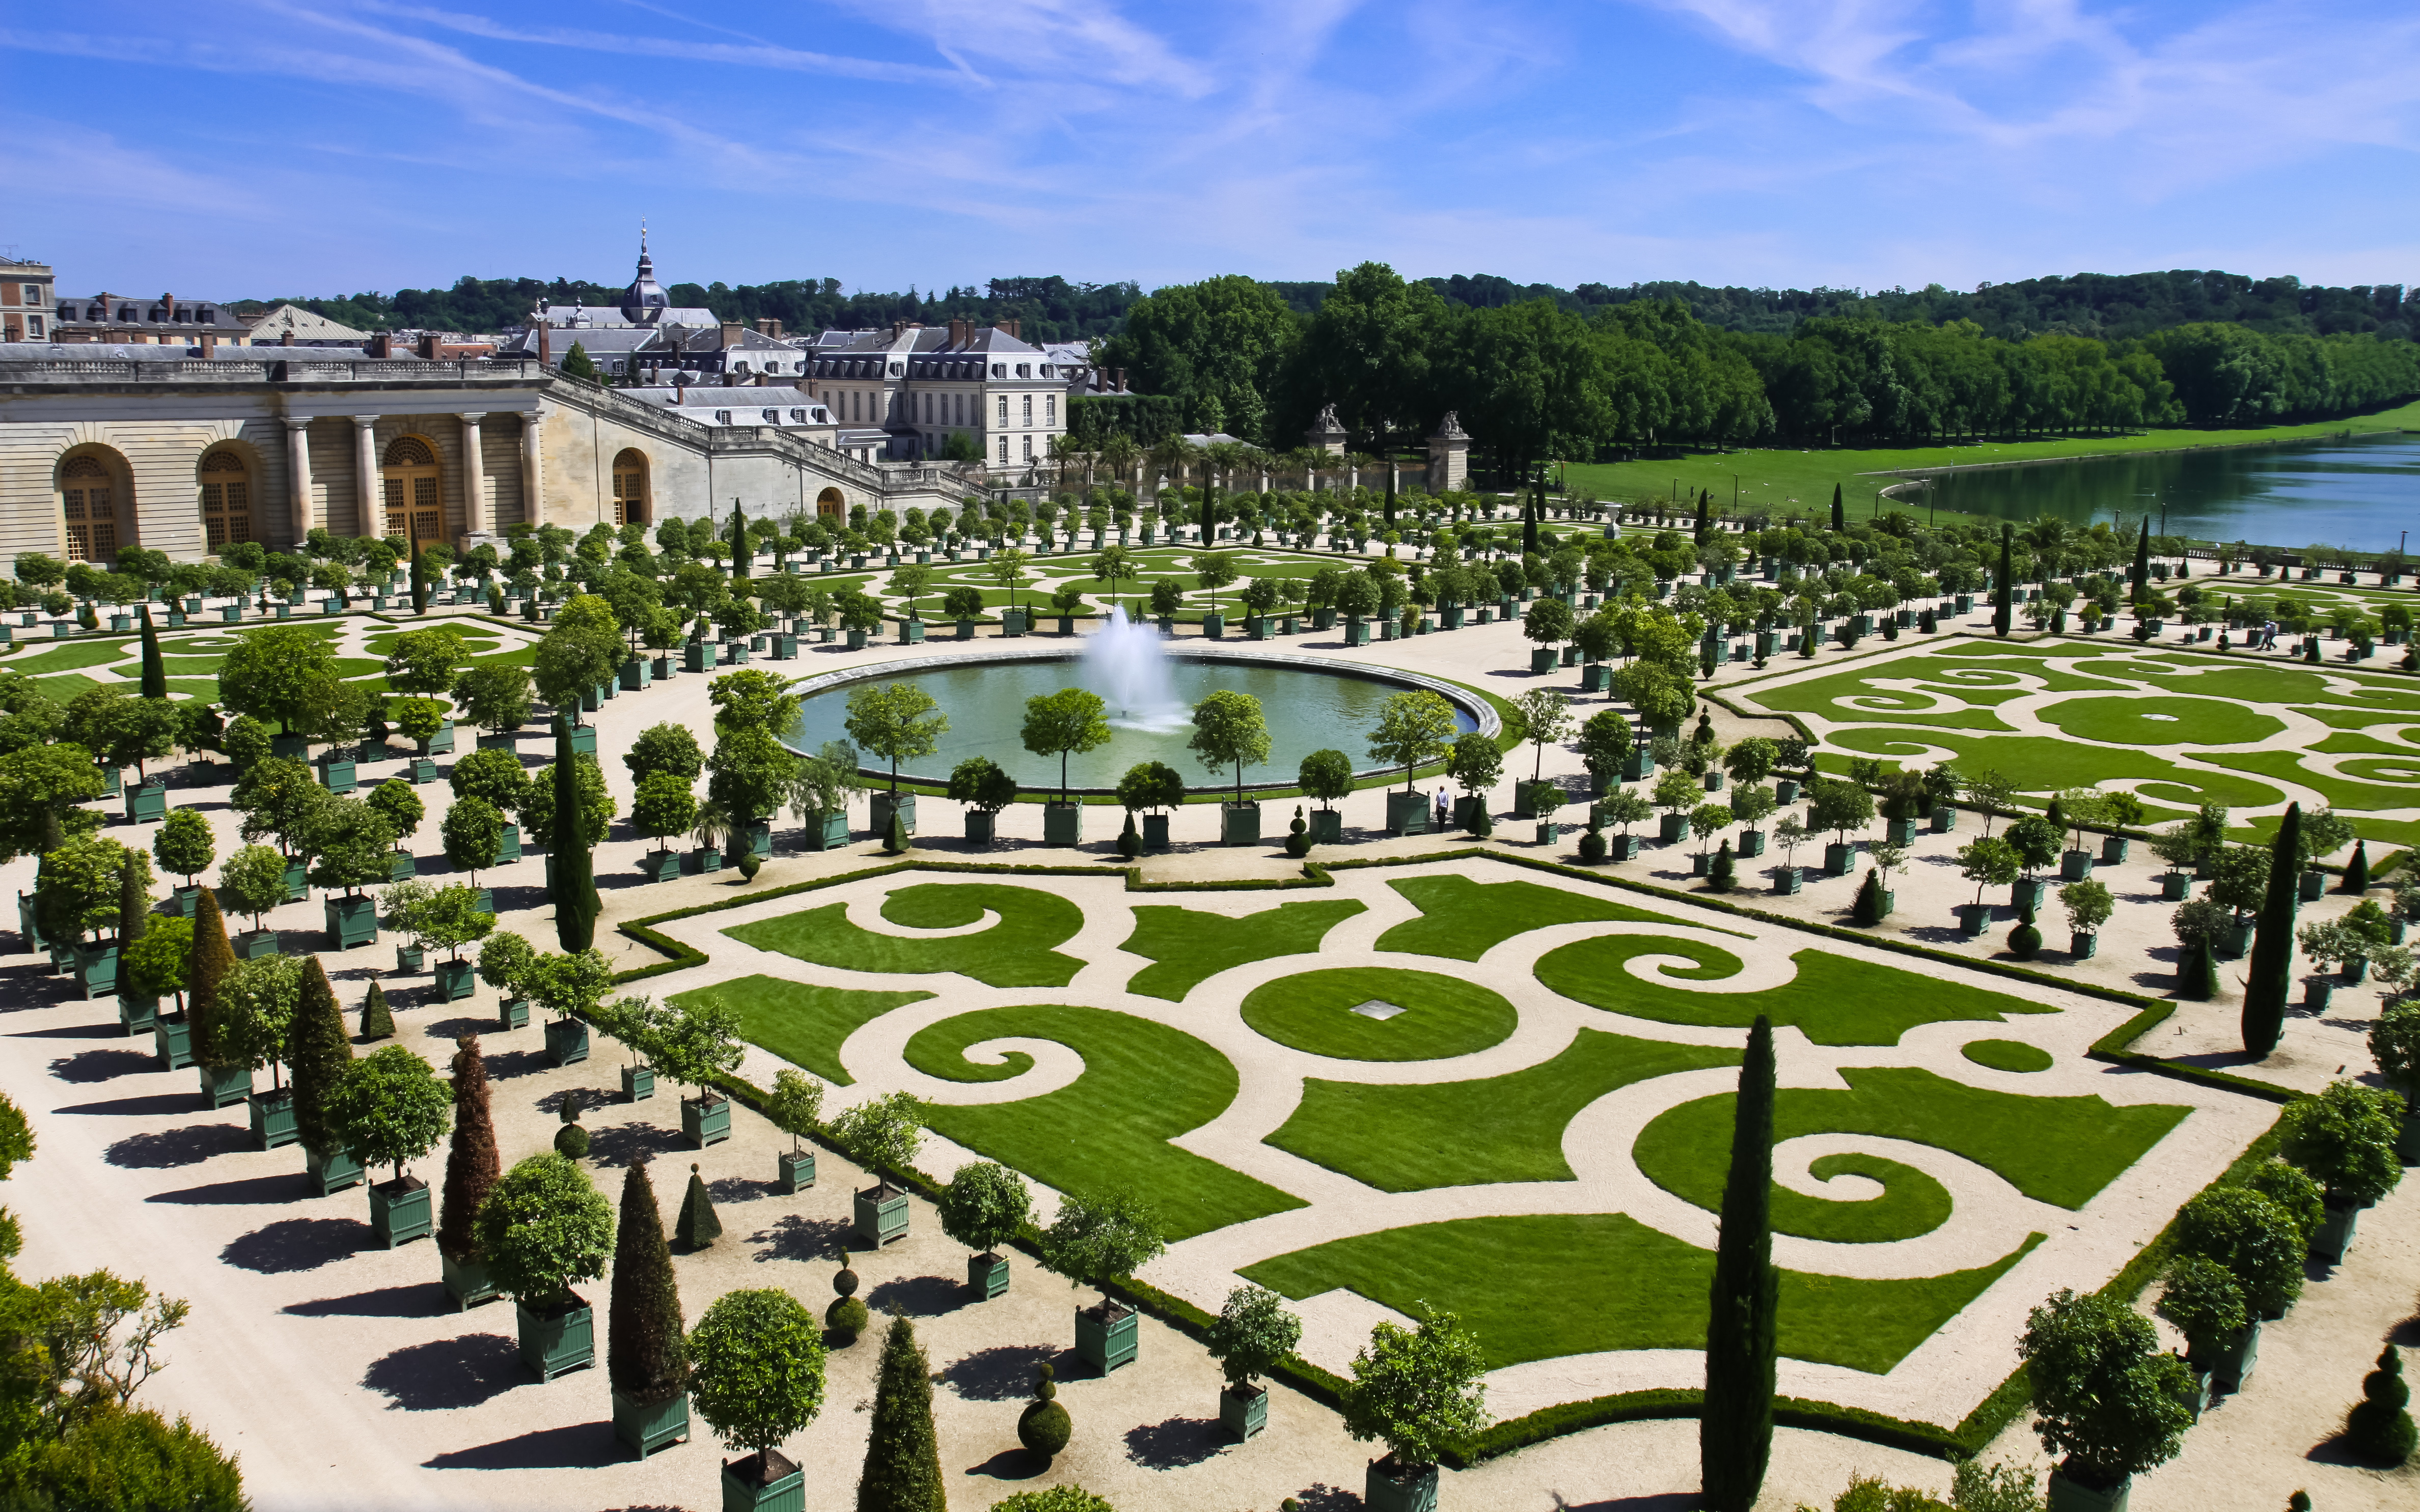 Chateau de versailles. Версальский дворец и парк. Садовый партер Версальского дворца. Версальский парк 2022. Парки Шато де Версаль.